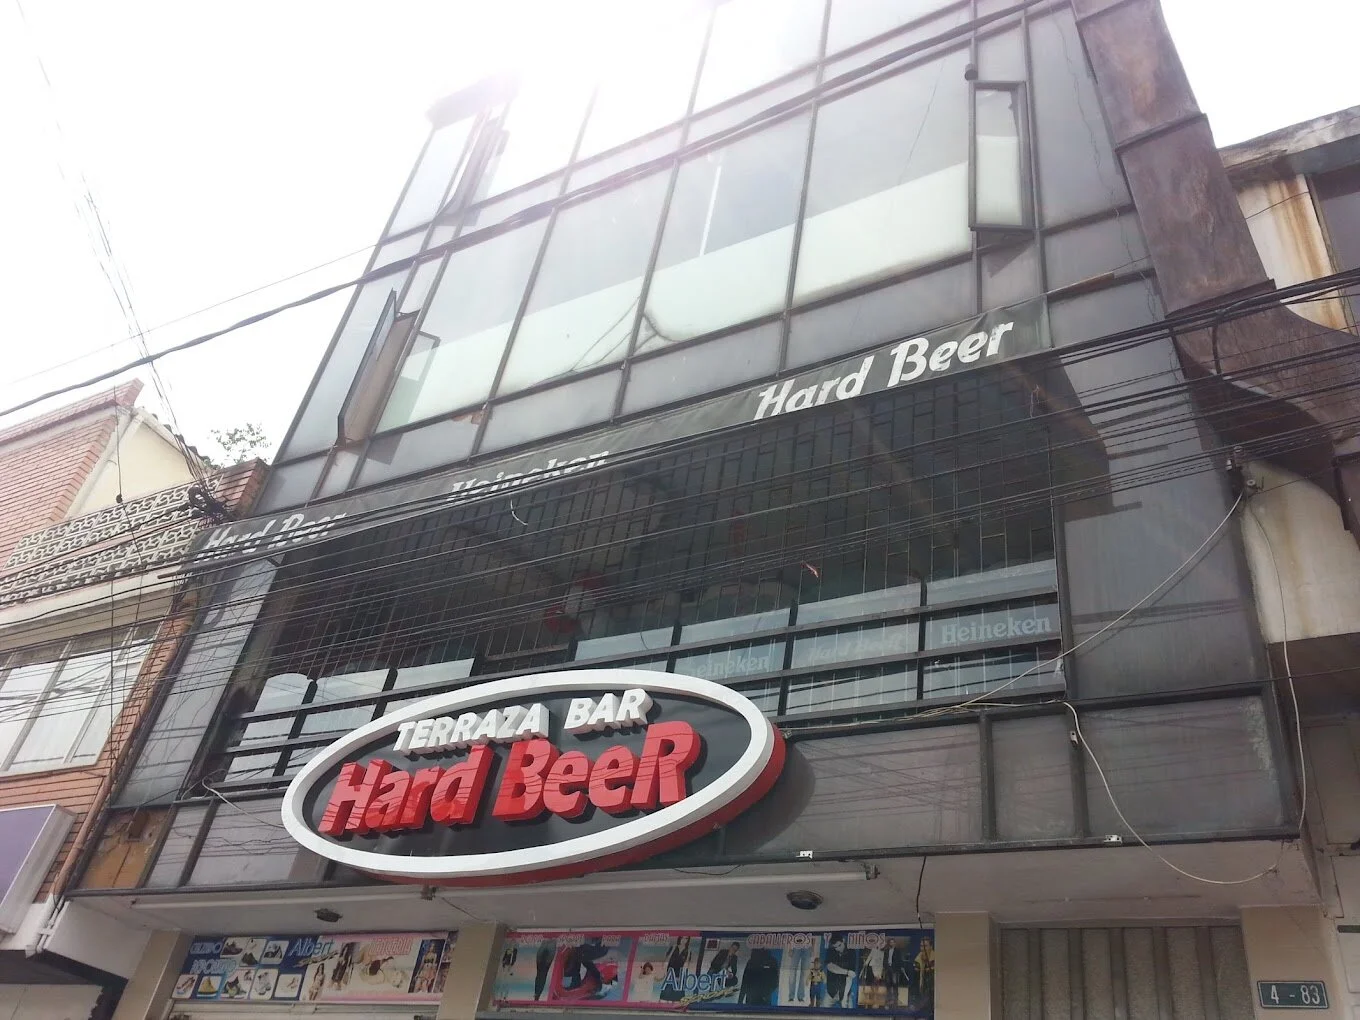 Hard beer terraza bar-9372